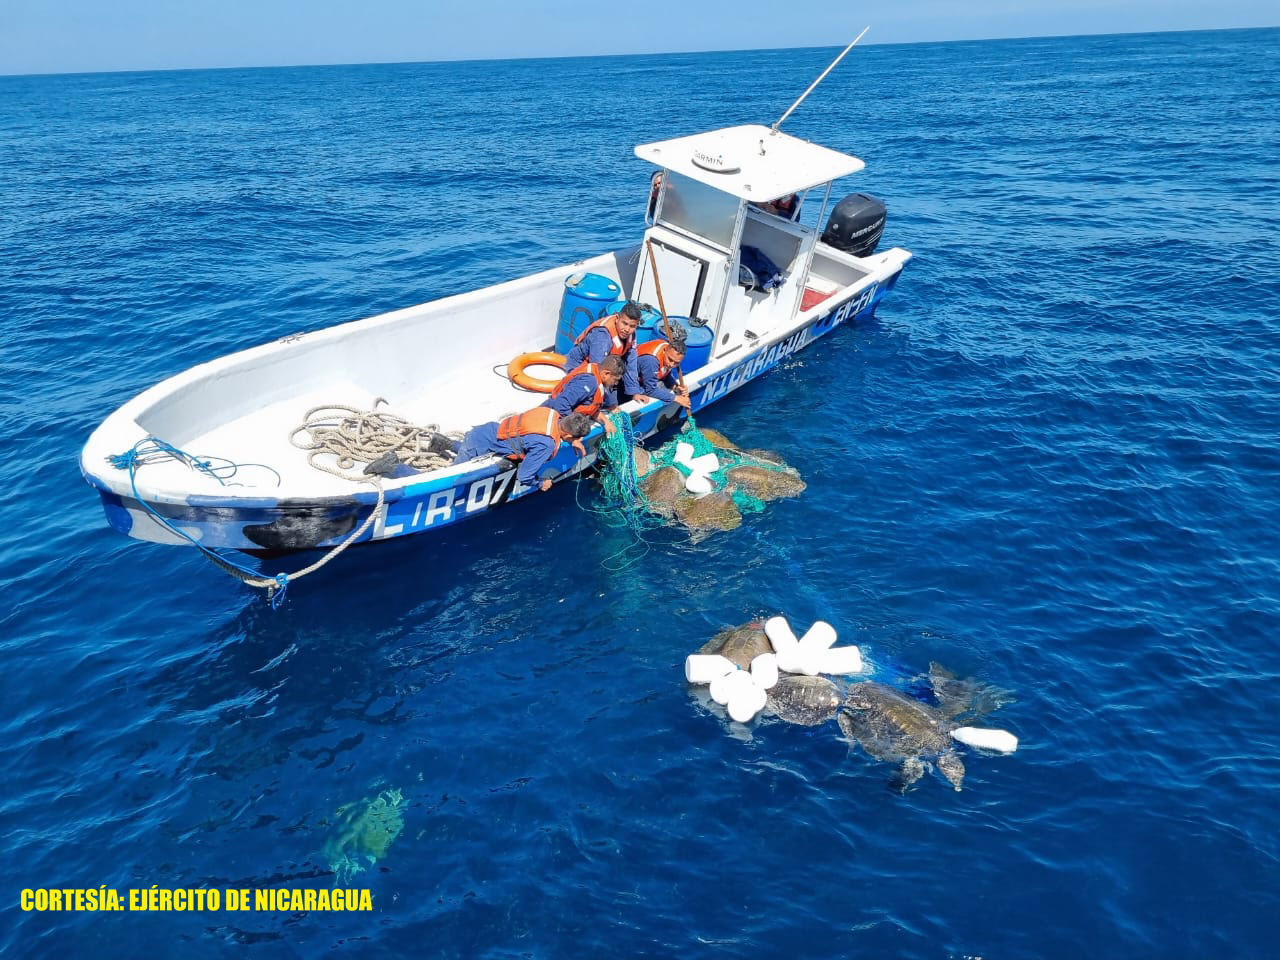 Foto: El Ejército de Nicaragua liberó 13 tortugas Paslama que estaban atrapadas / Cortesía